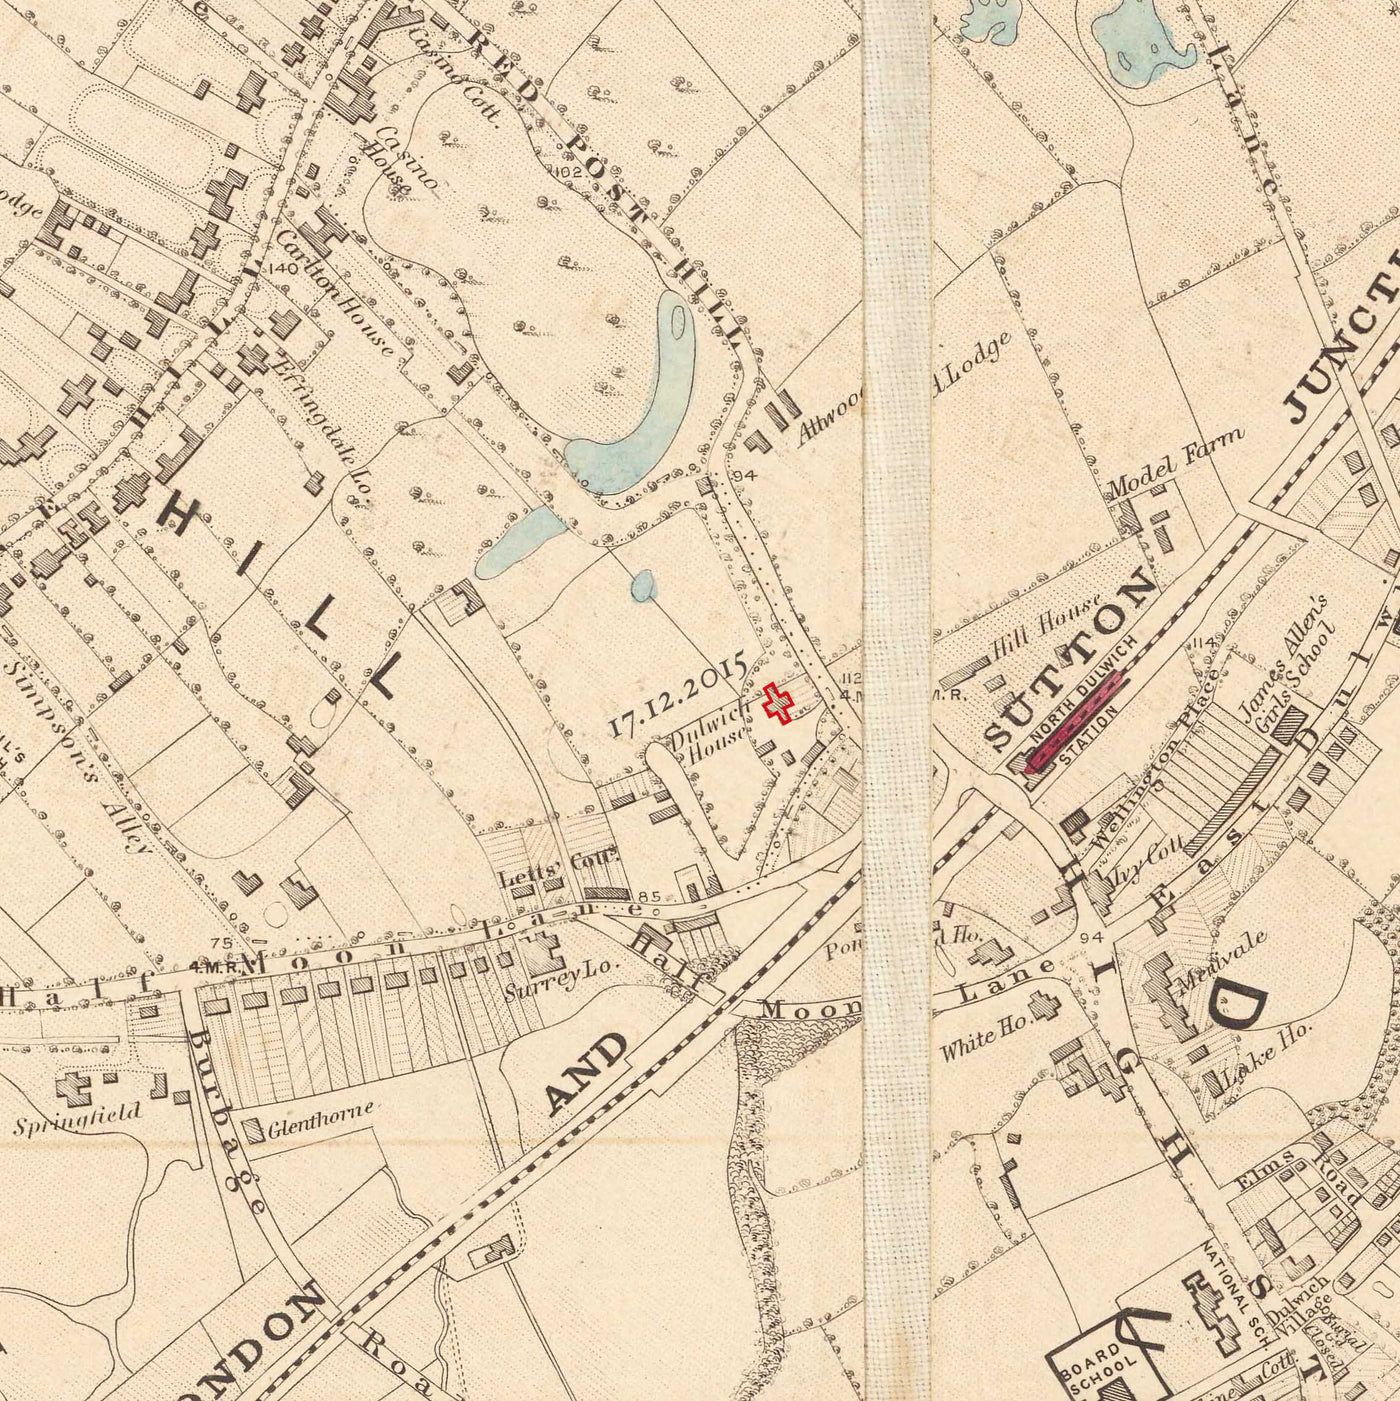 Ancienne carte en couleur de l'est de Londres en 1891 - Victoria Park, Hackney, Bow, Stratford, Tower Hamlets - E9, E20, E3, E15